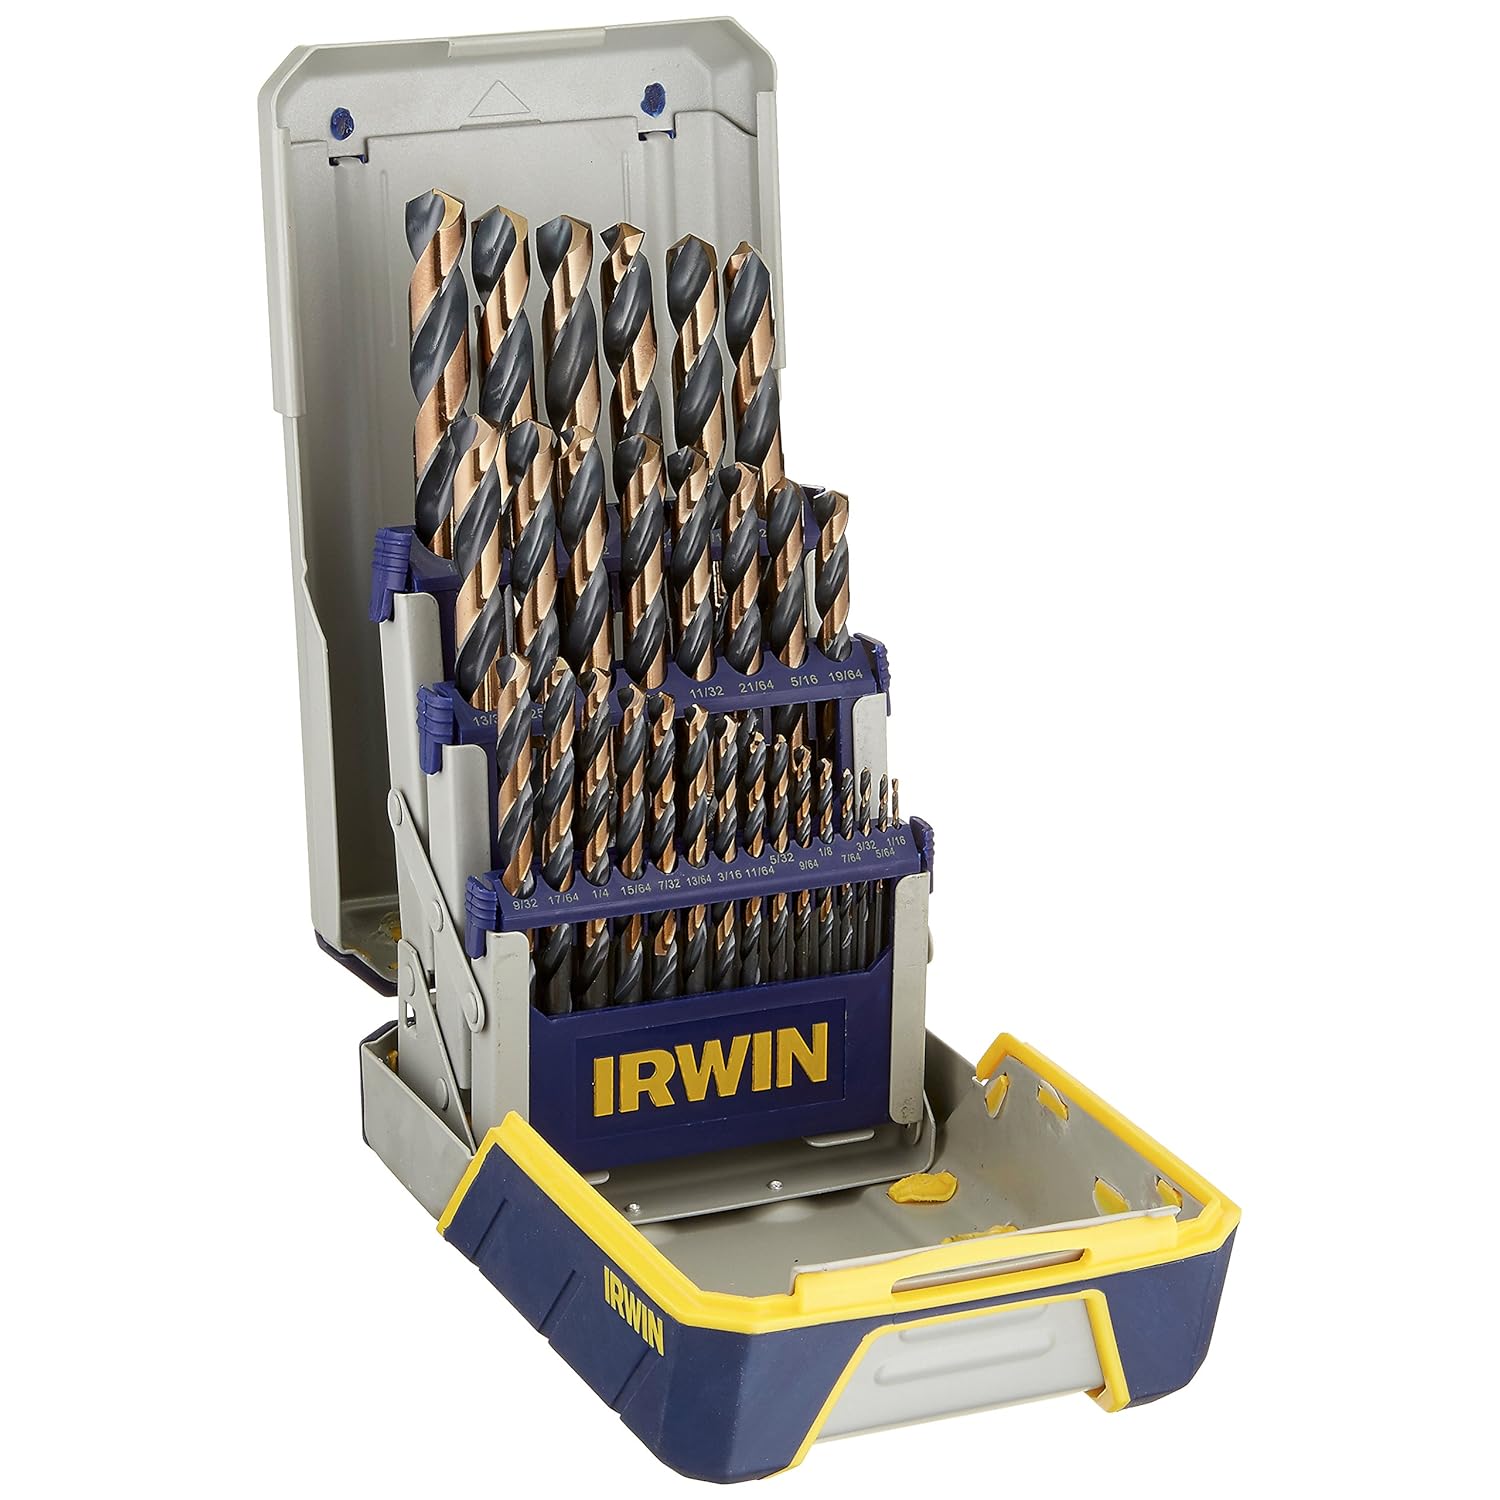 IRWIN Drill Bit Set, High-Speed Steel, 29-Piece (3018005)